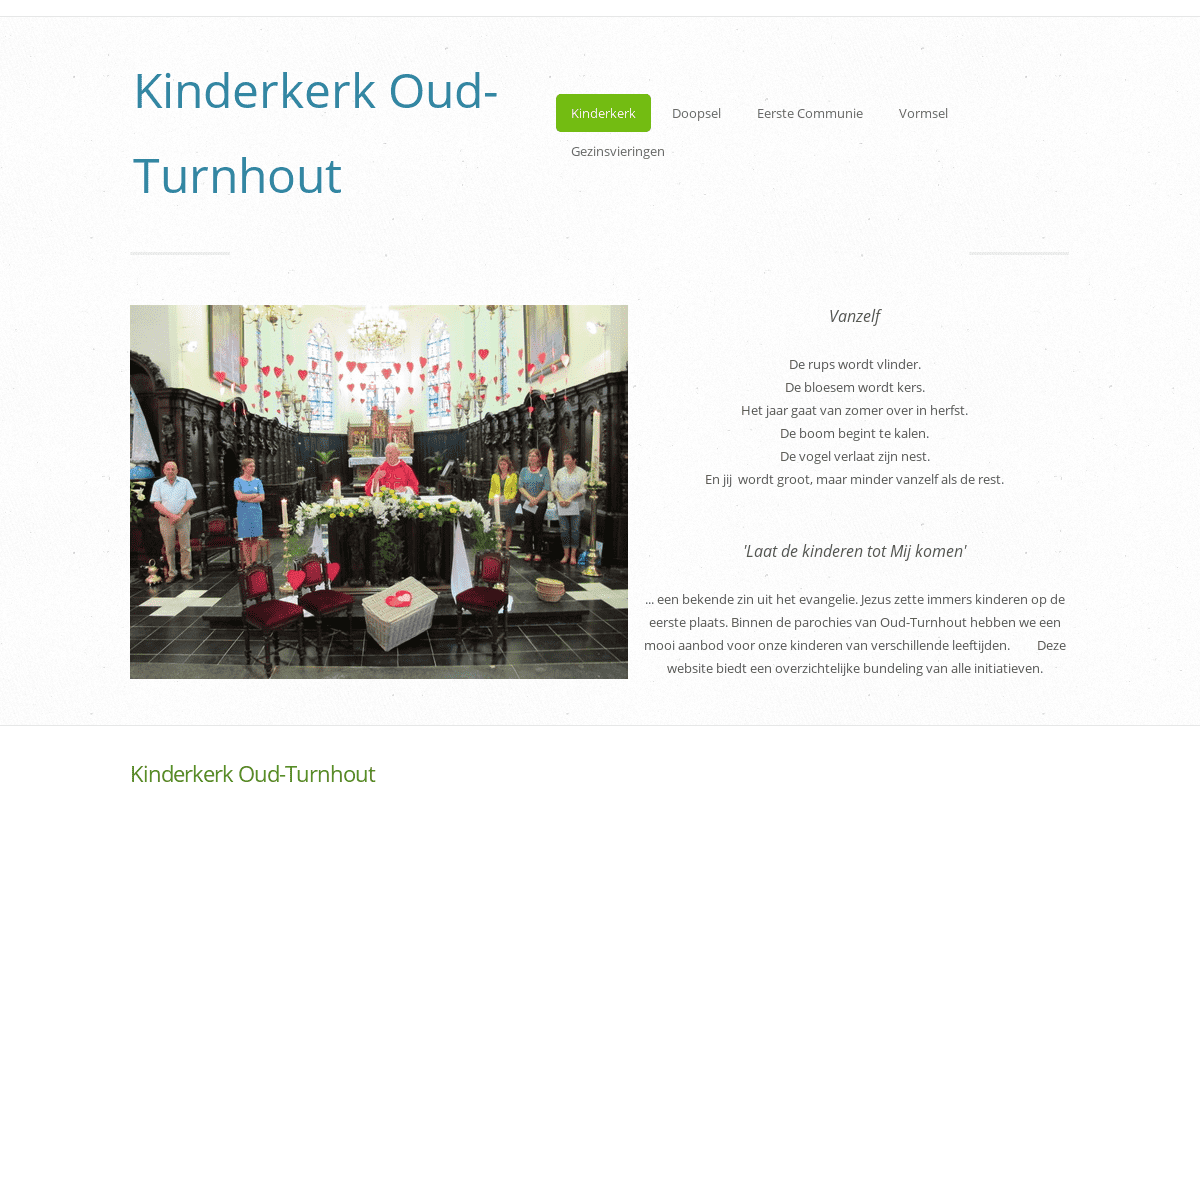 A complete backup of kinderkerkoudturnhout.com